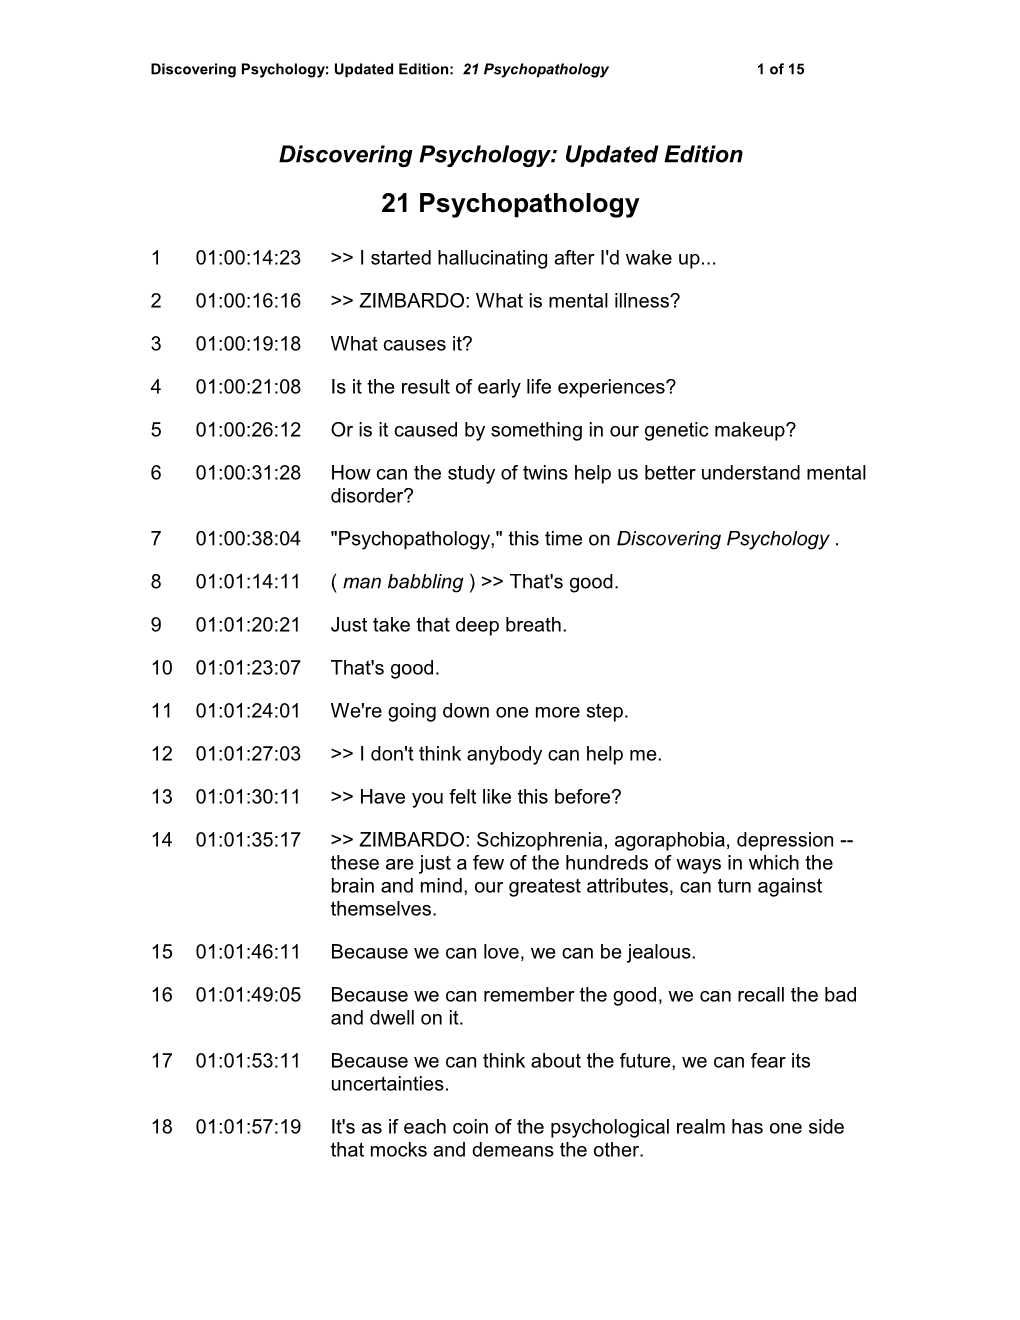 Discovering Psychology, Psychopathology Transcript